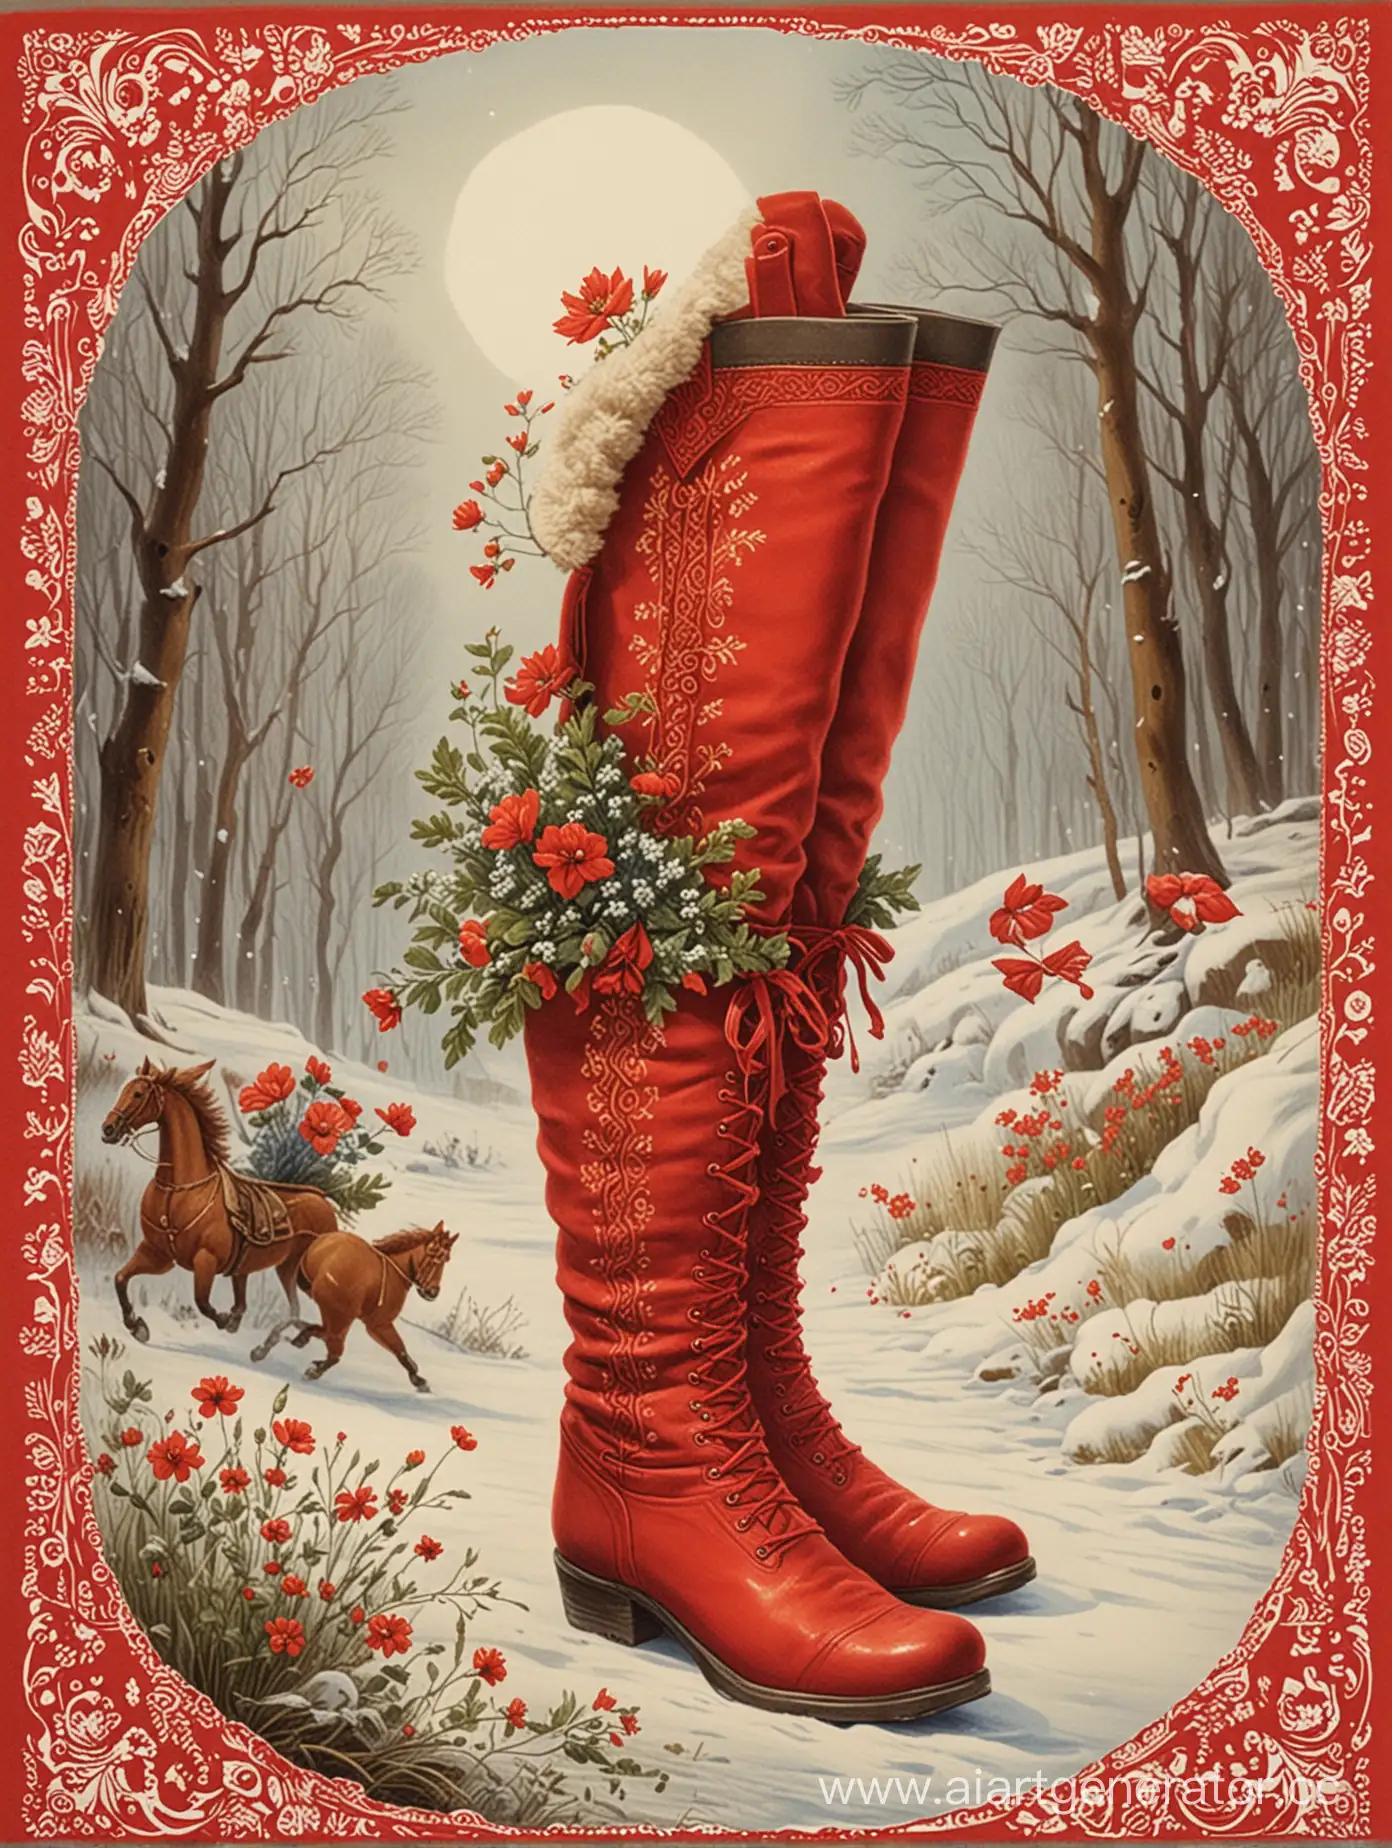 карточка, красные сапоги скороходы в стиле русских народных сказок